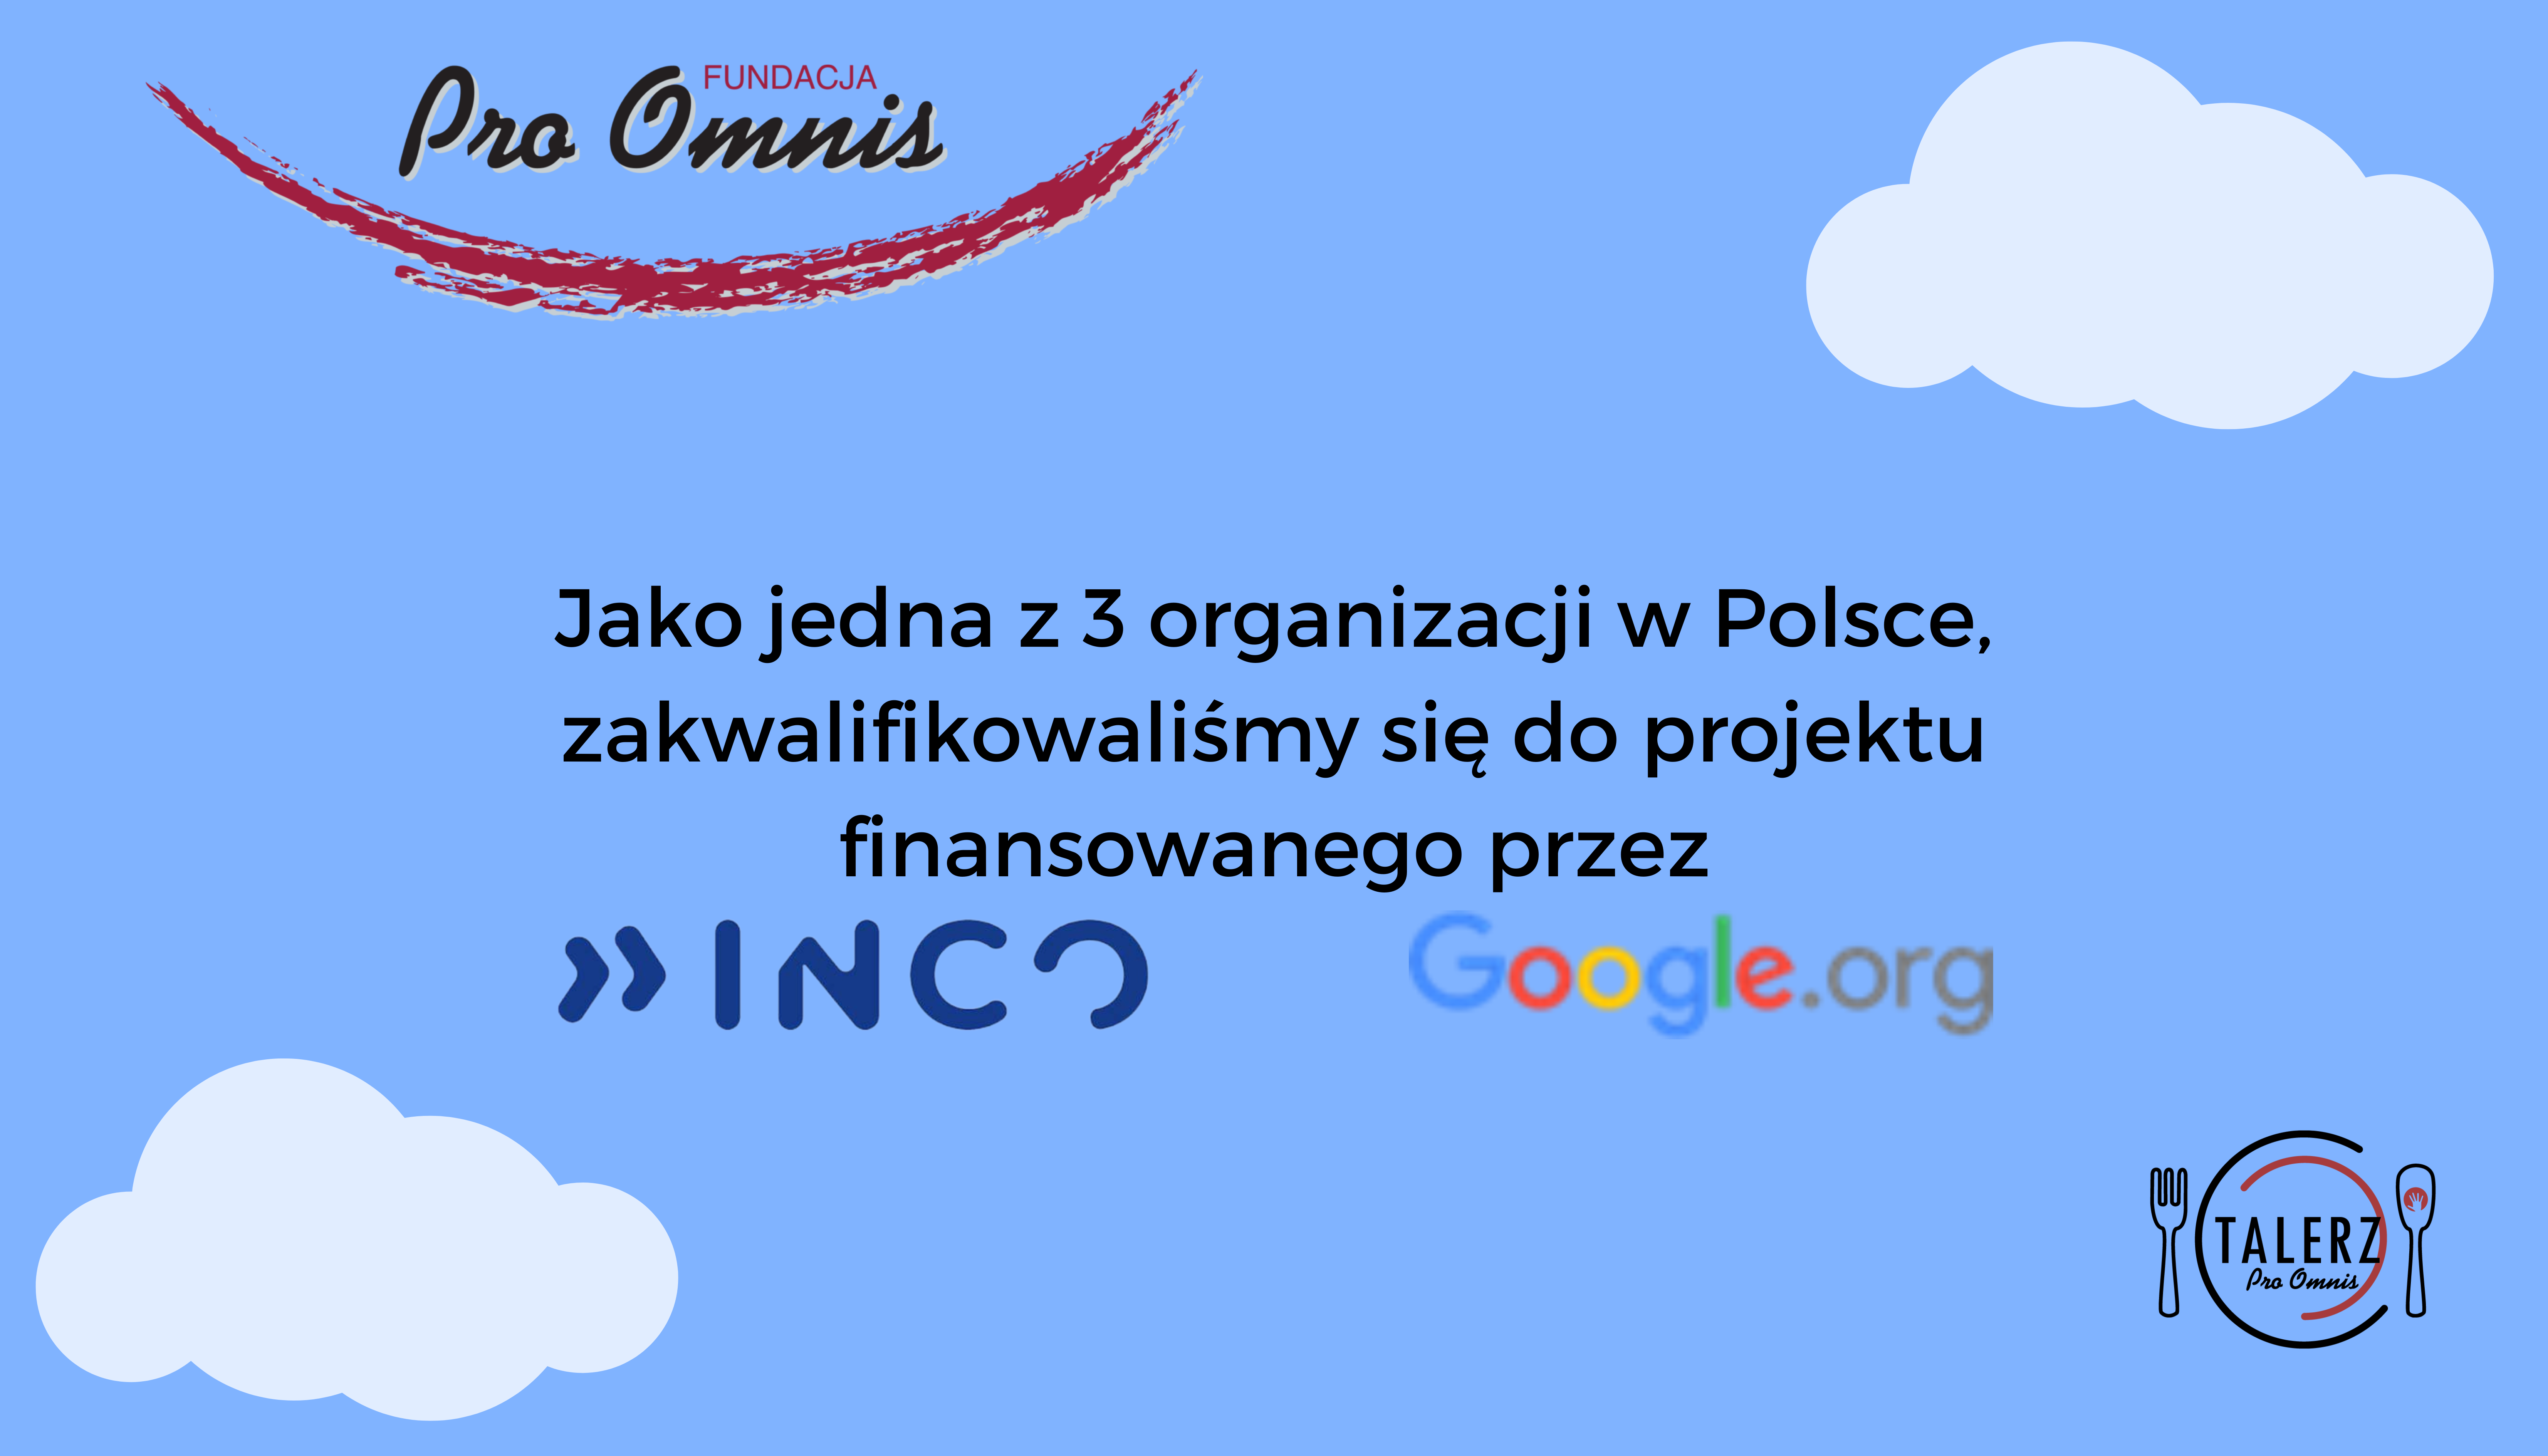 Fundacja Pro Omnis zakwalifikowała się do projektu finansowanego przez Inco oraz Google.org